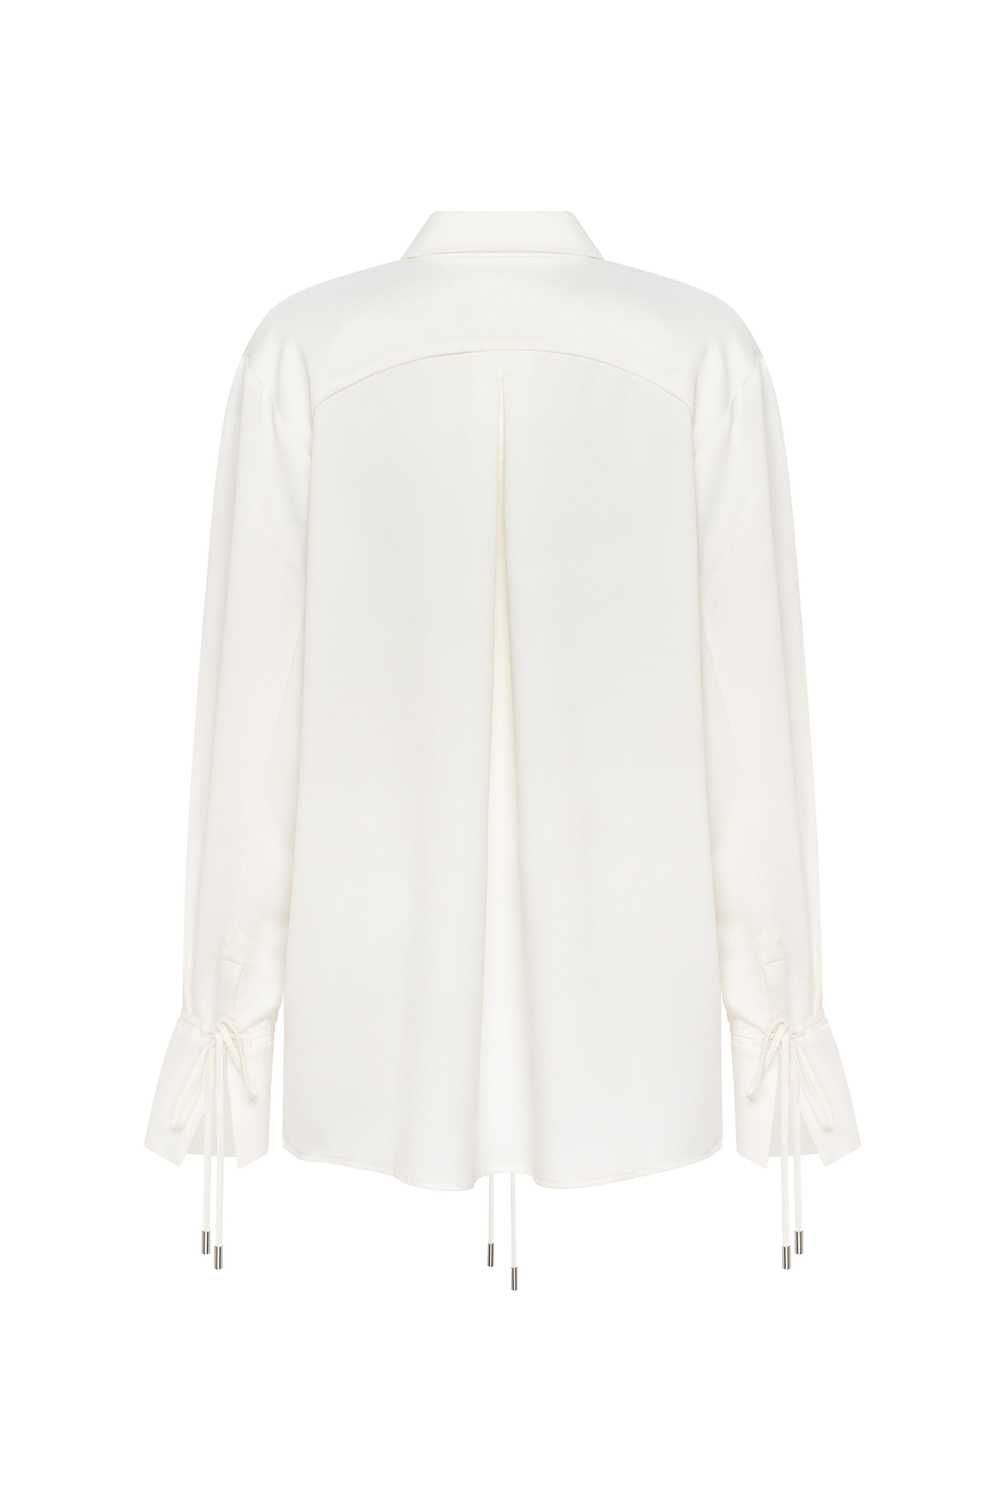 Milla Front-tie satin blouse in white, Xo Xo - image 3